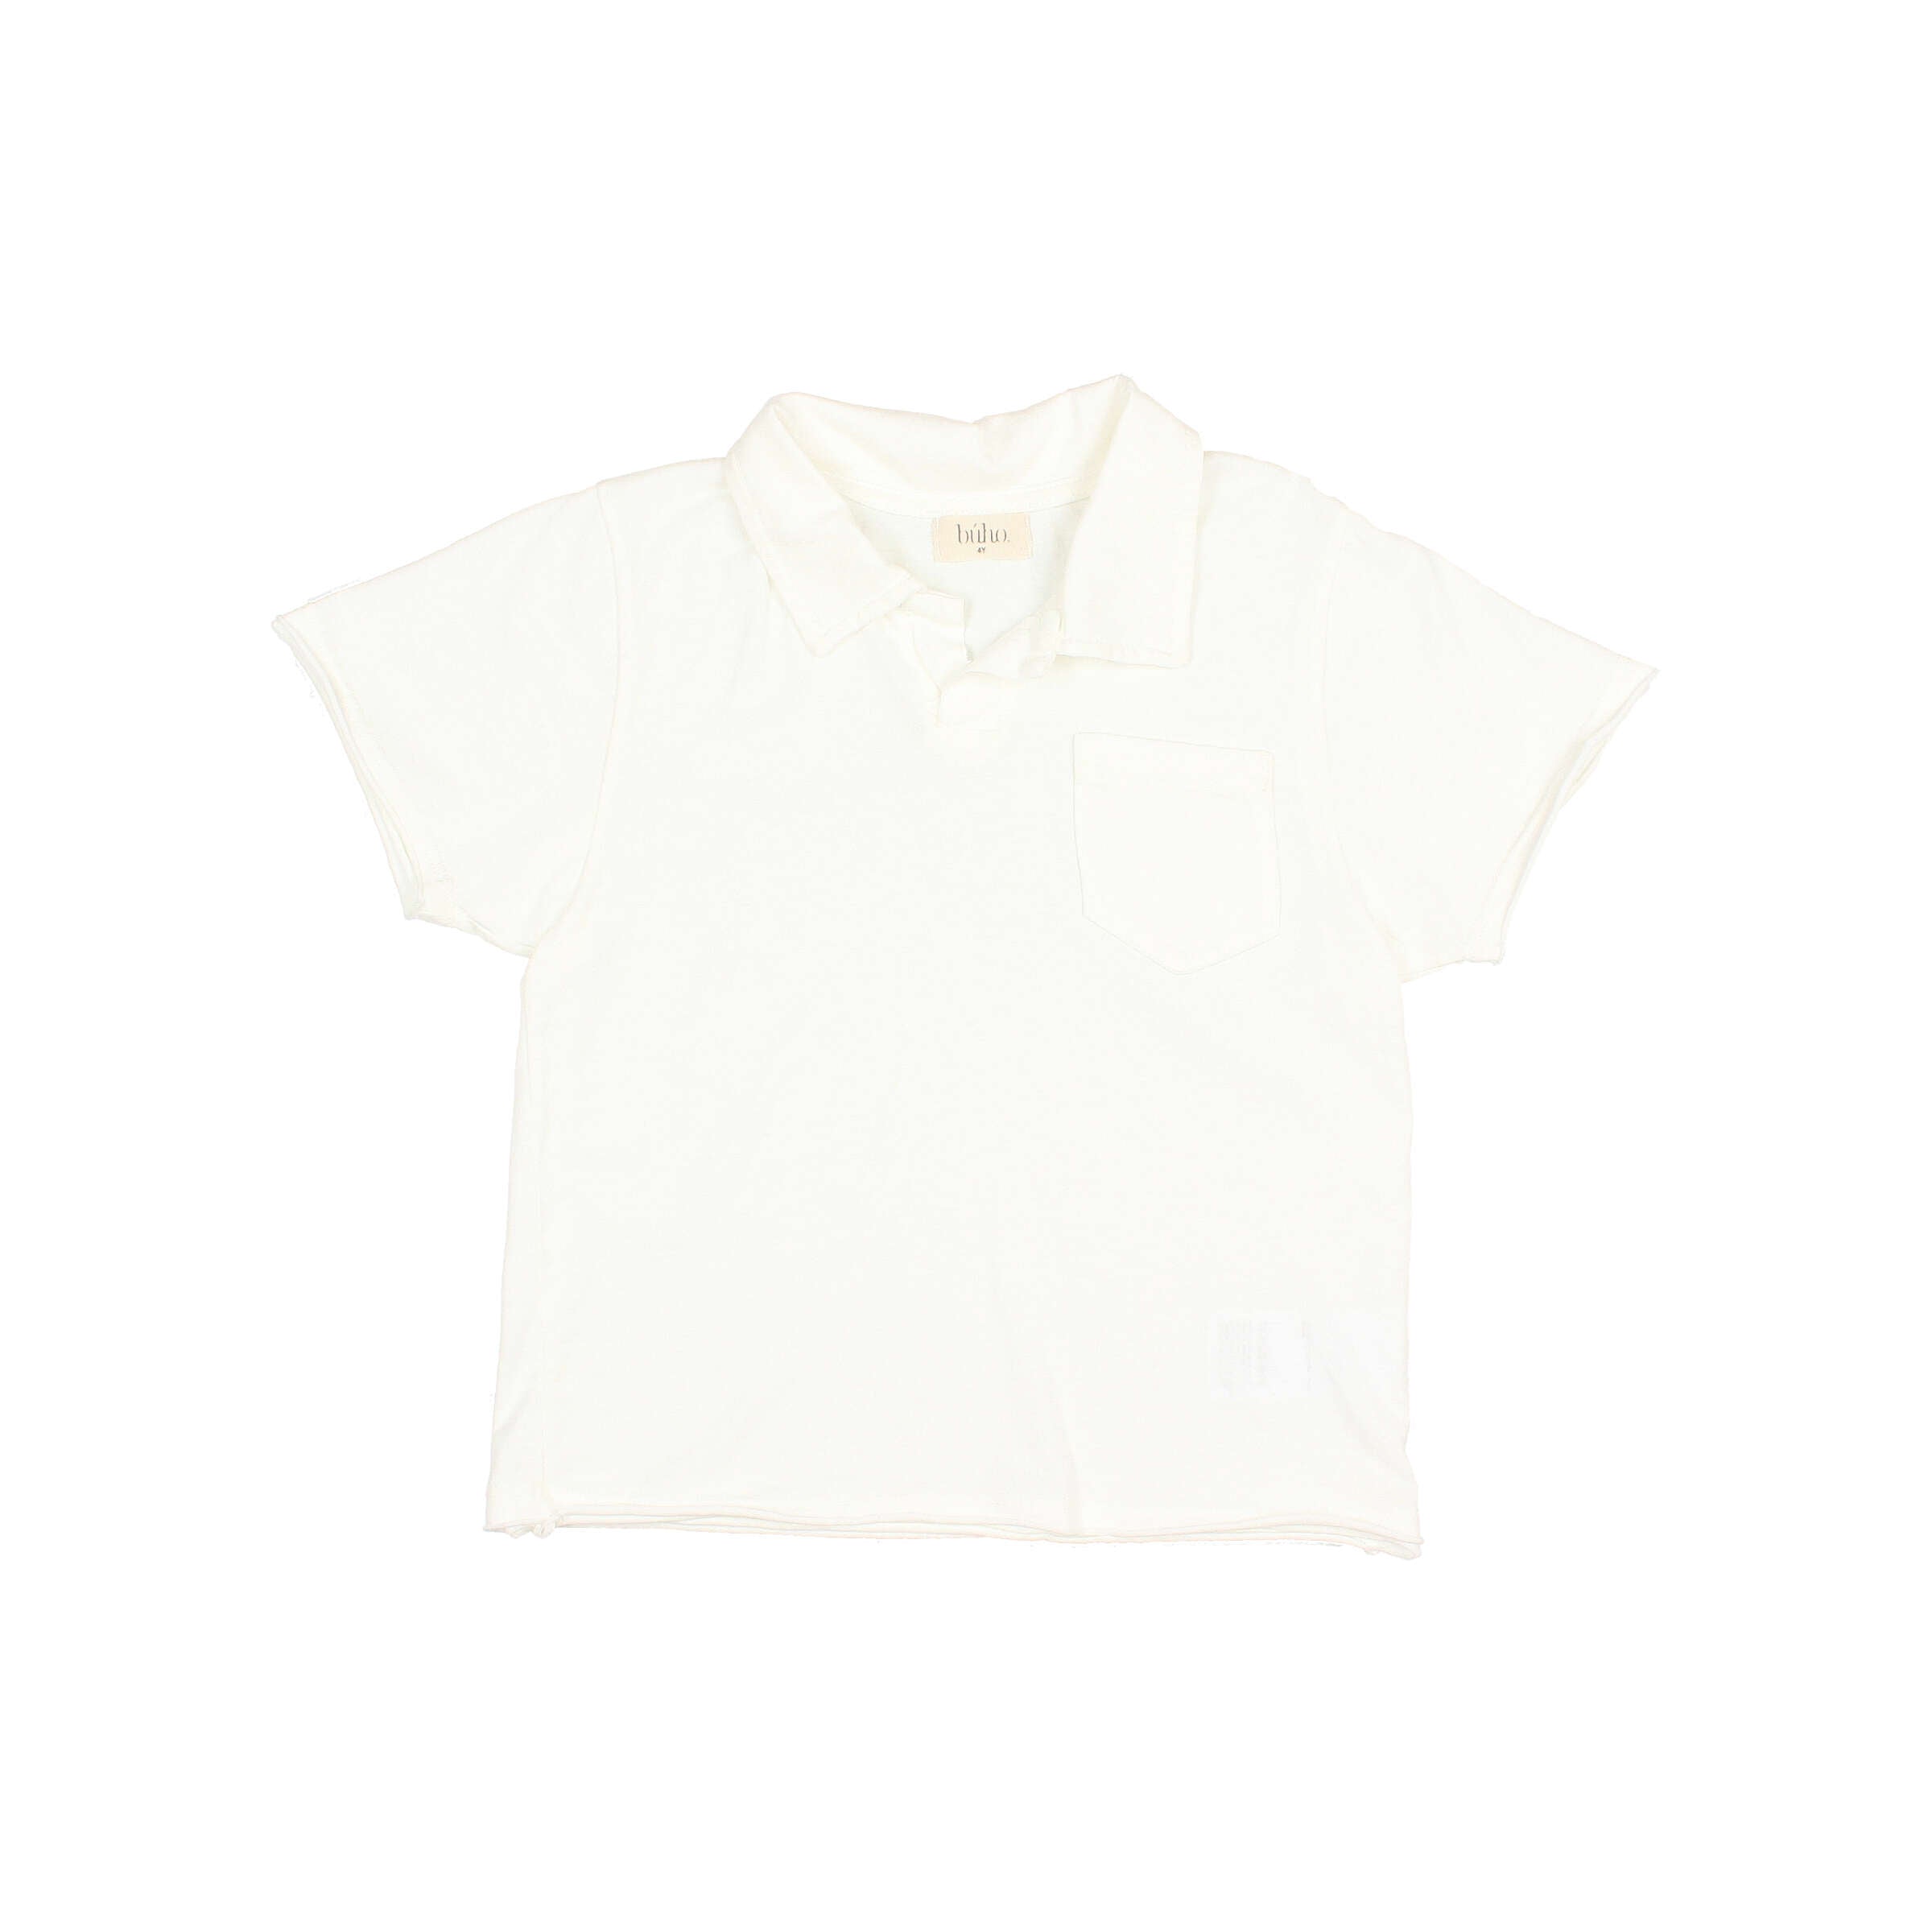 Spring Polo Shirt I White